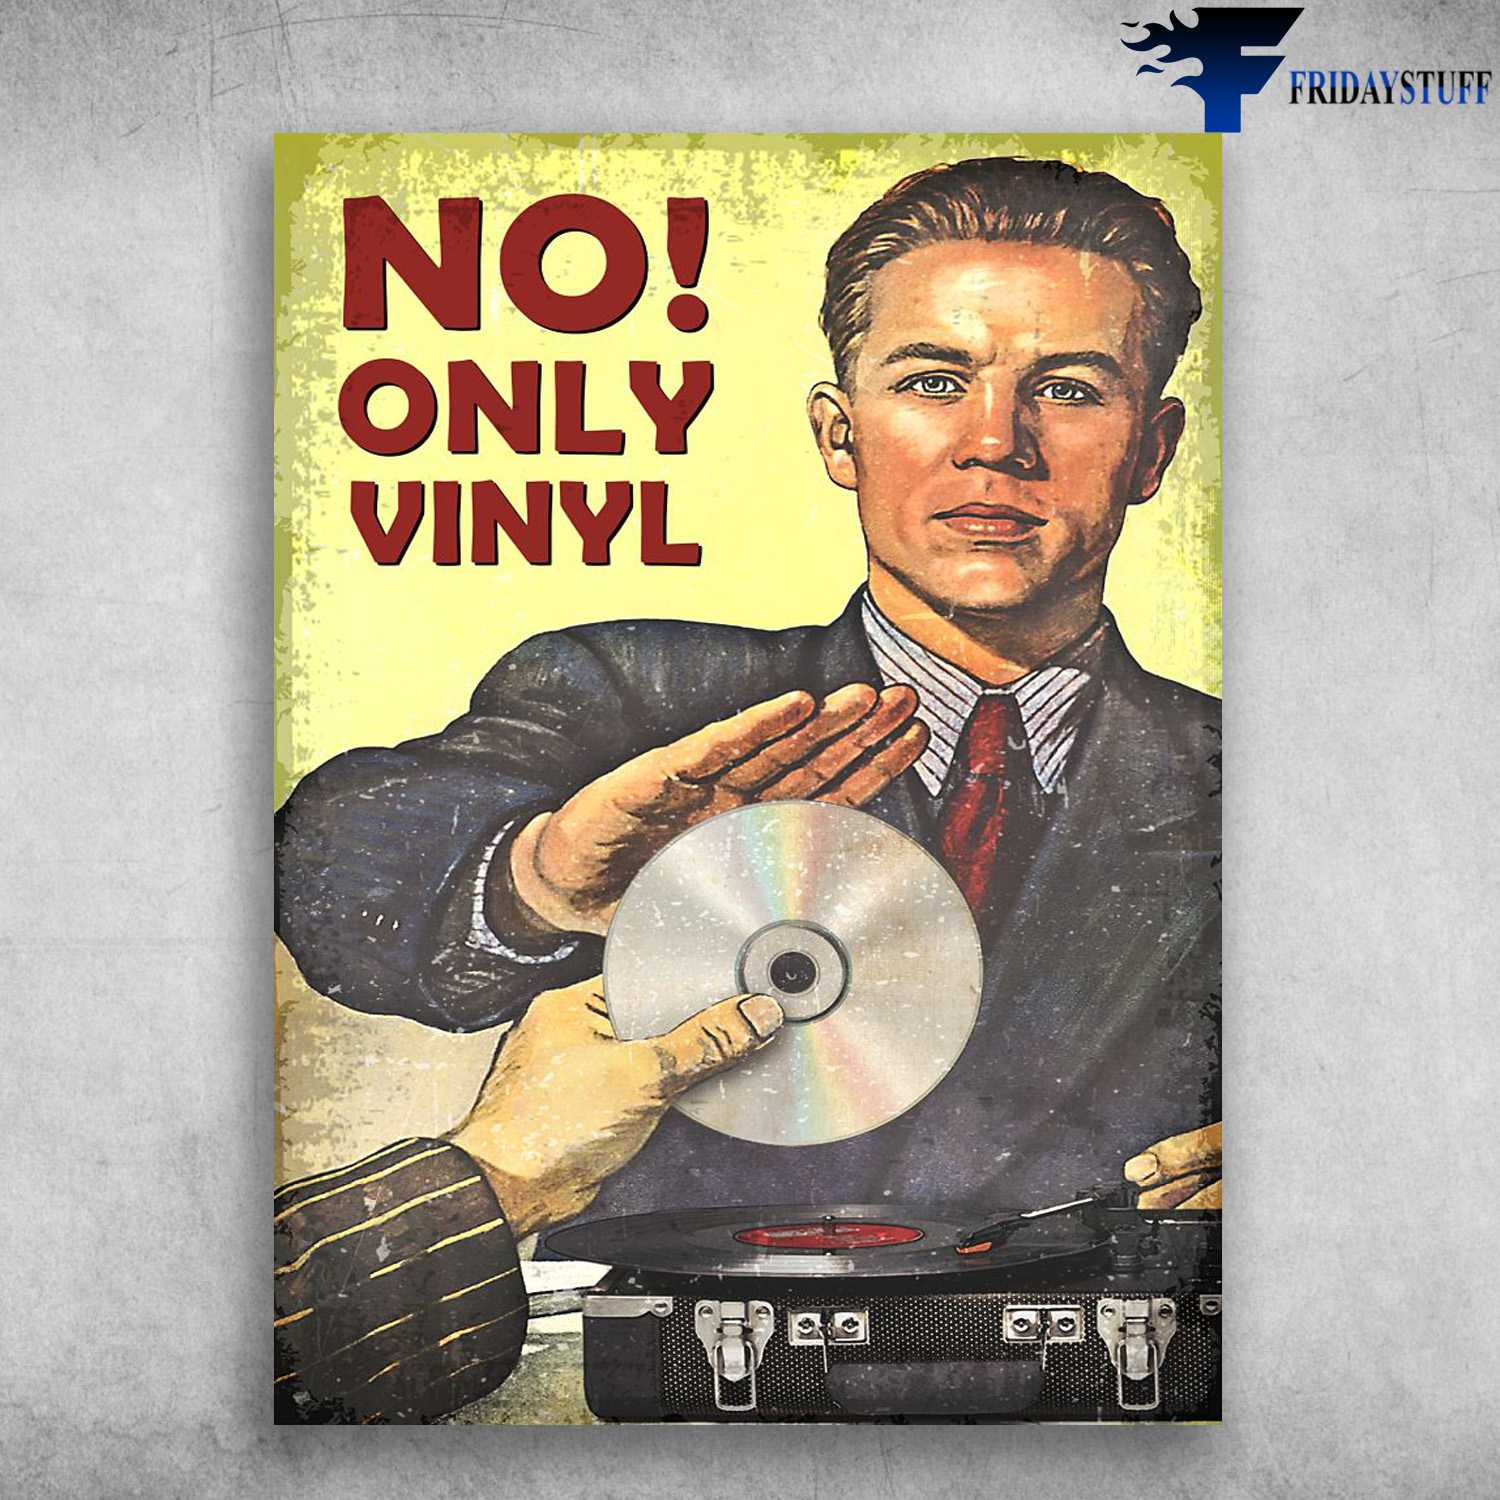 No CD, Only Vinyl, Vinyl Record Lover